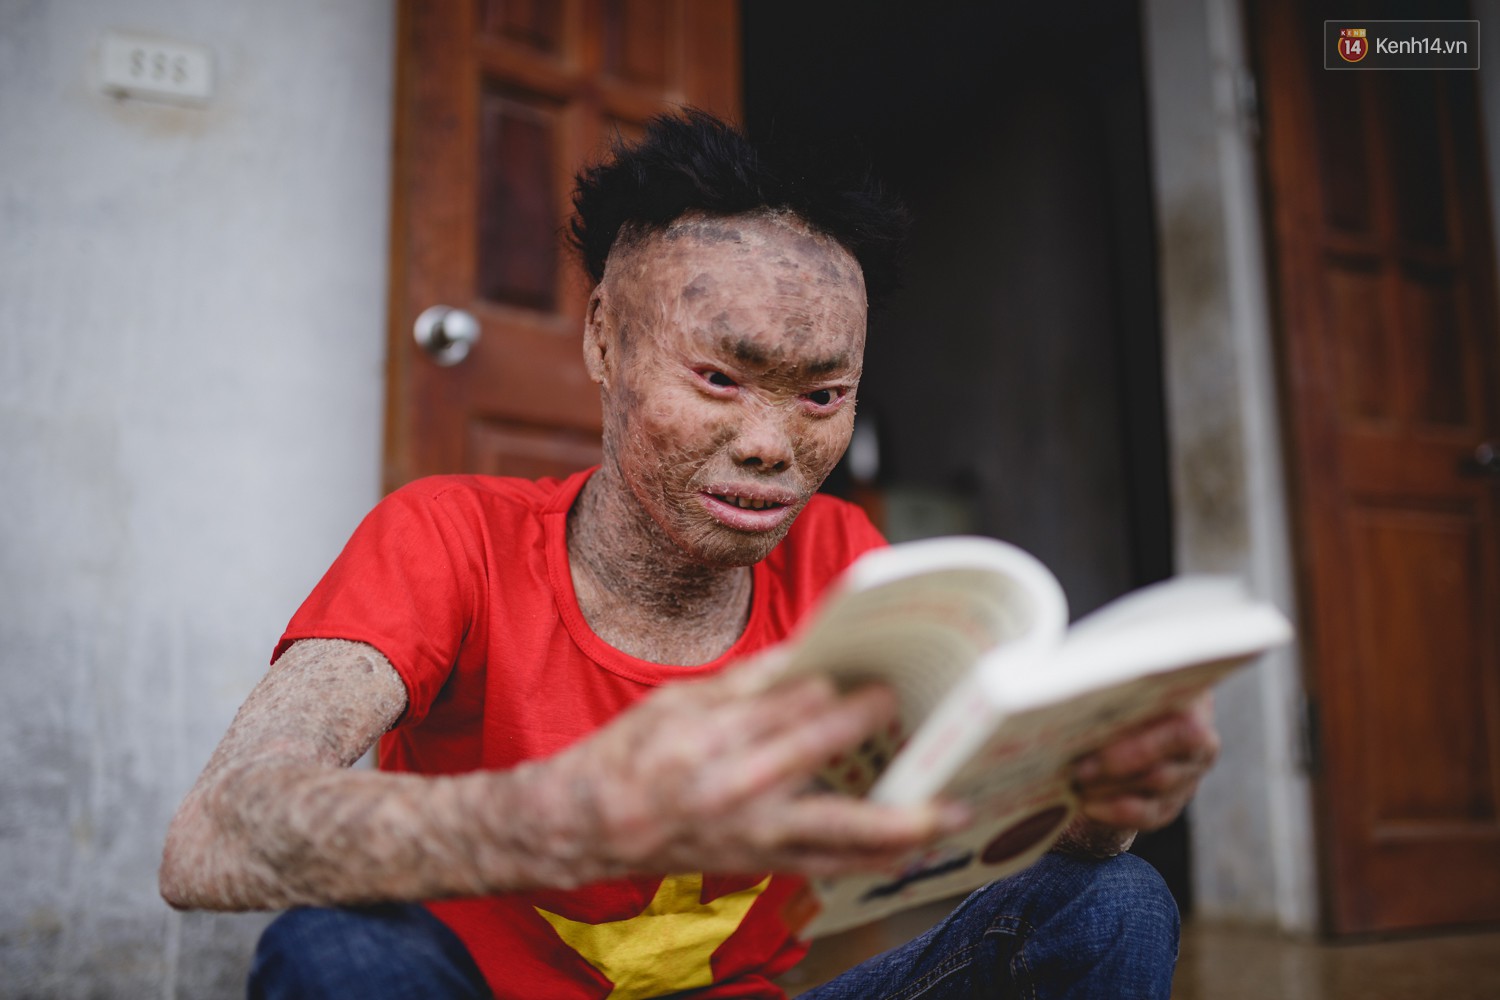 Chàng trai người cá lạc quan ở Hà Nội: Nhìn thấy bộ dạng của mình, nhiều người hỏi sao không chết đi, sống để làm gì?-14